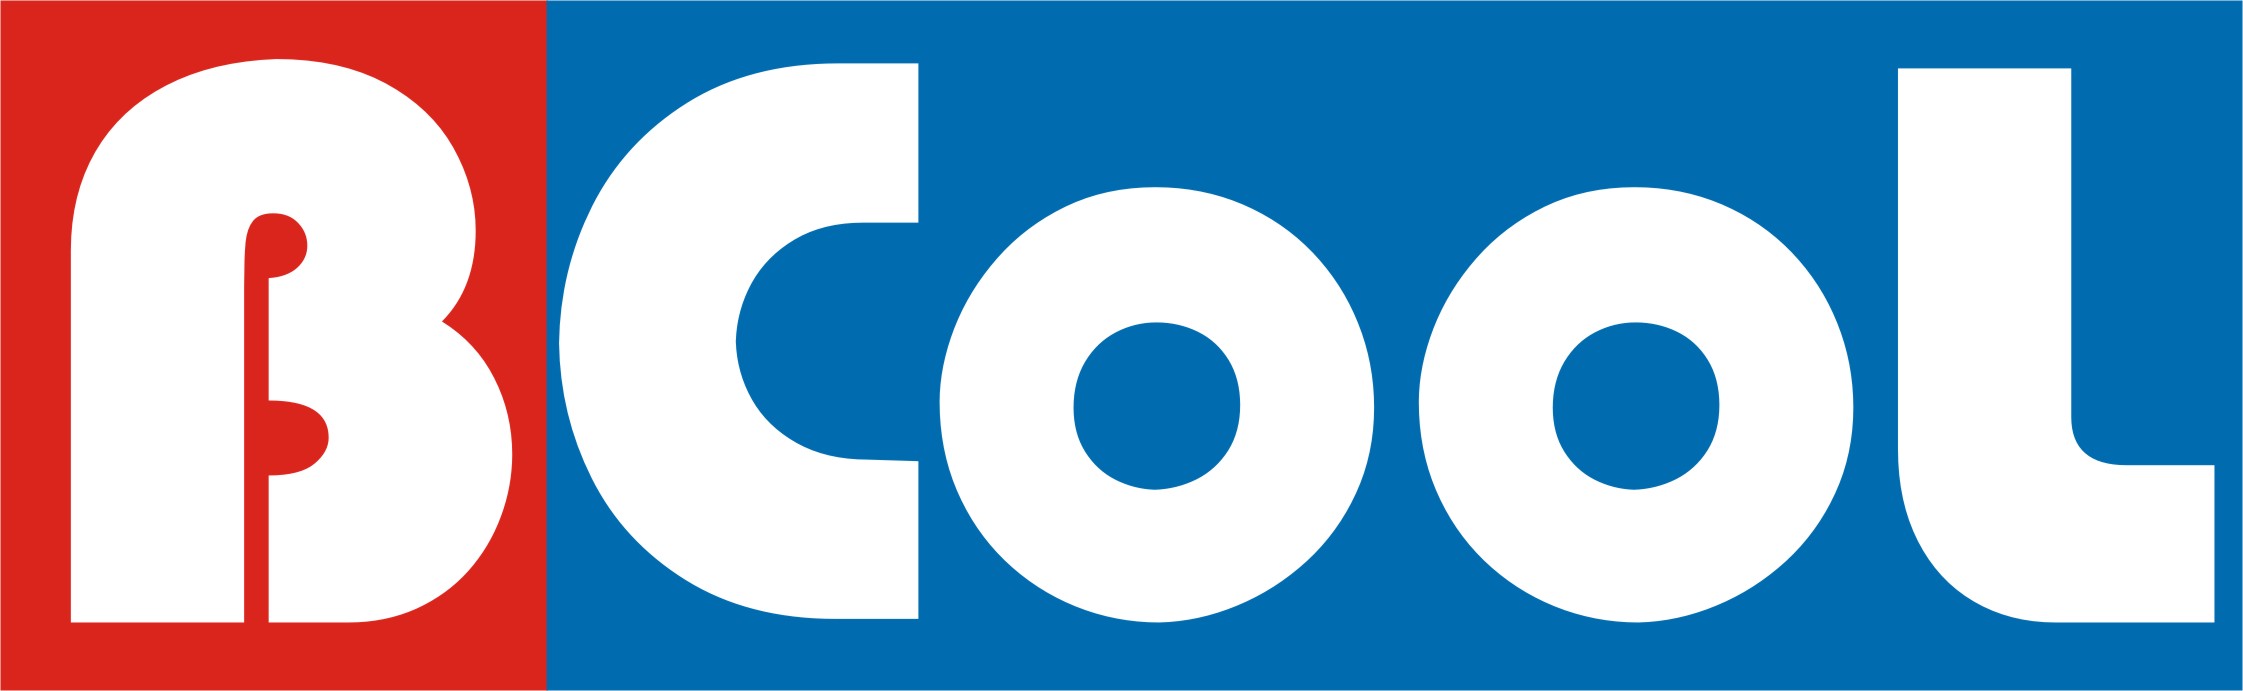 BCCOL Logo